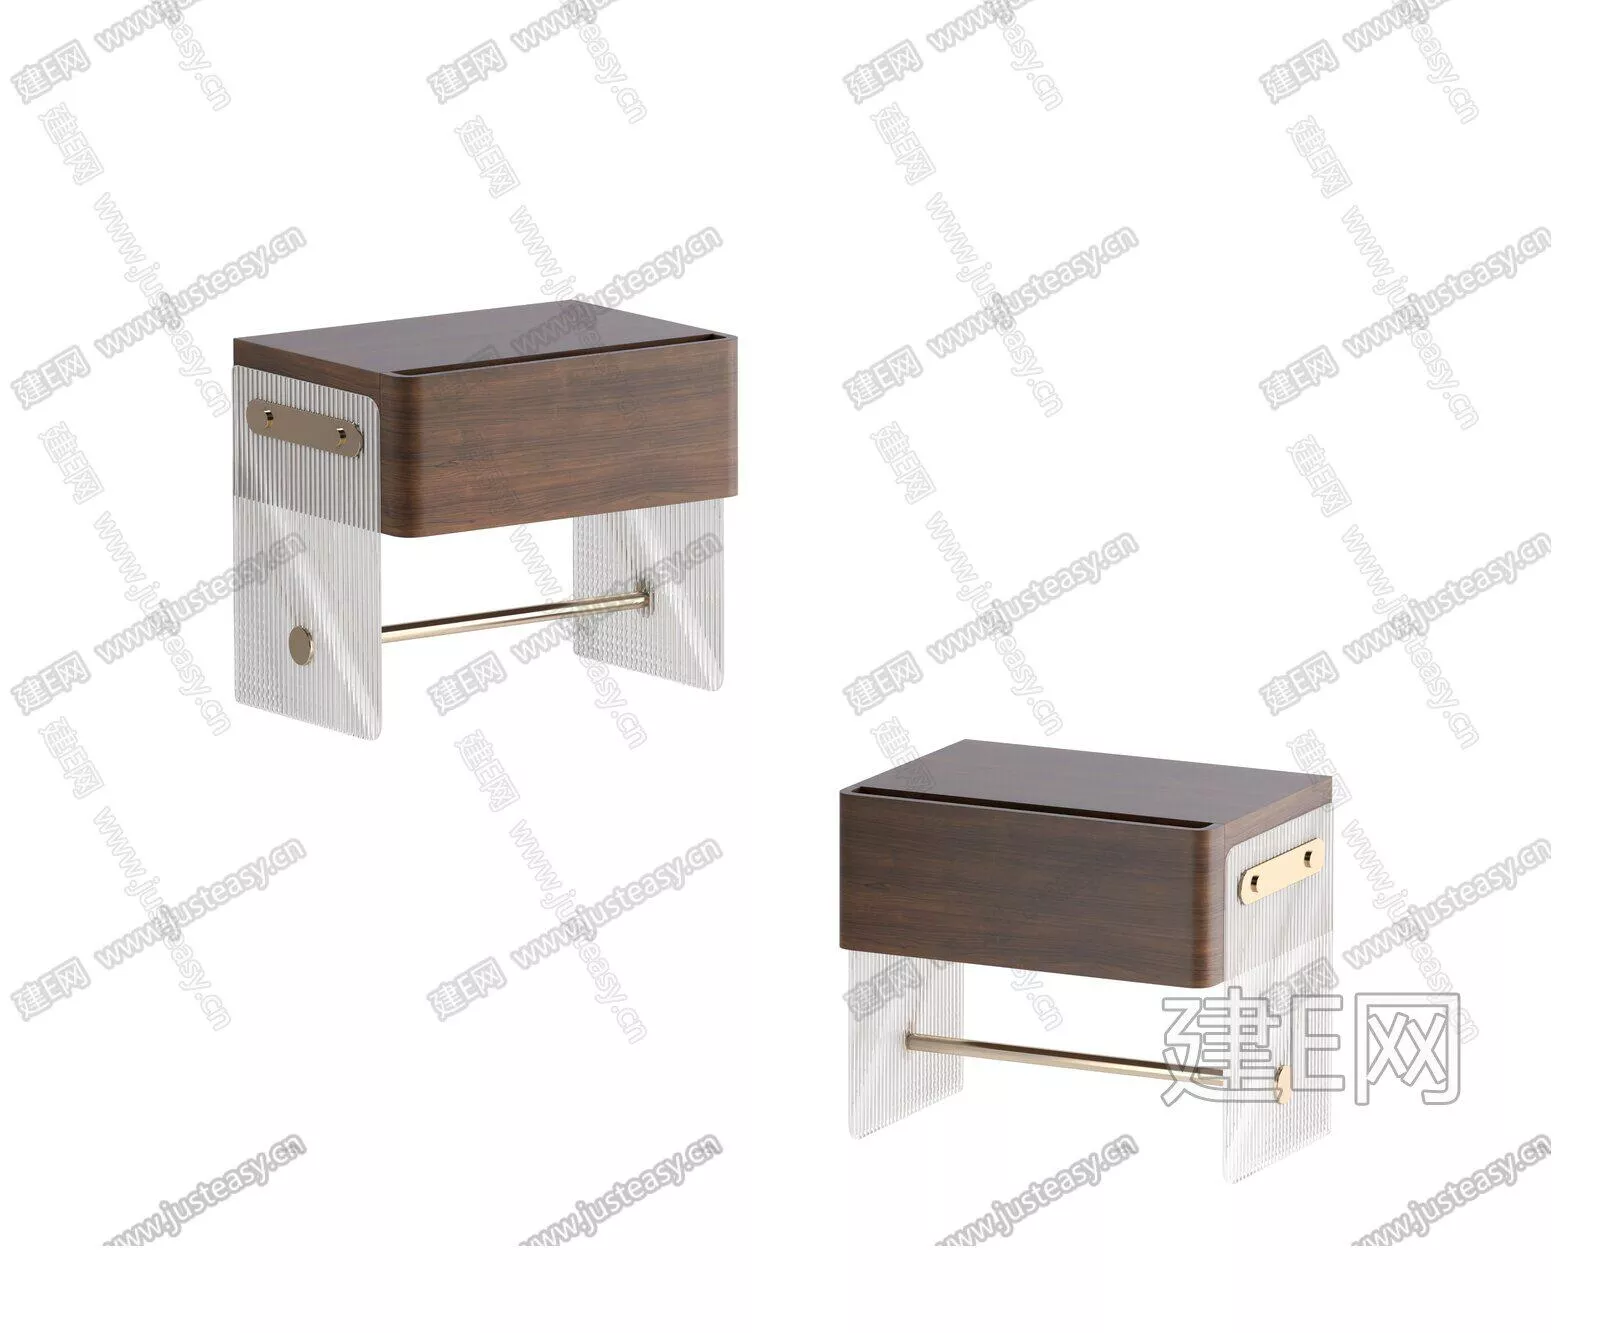 MODERN BEDSIDE TABLE - SKETCHUP 3D MODEL - ENSCAPE - 106057030